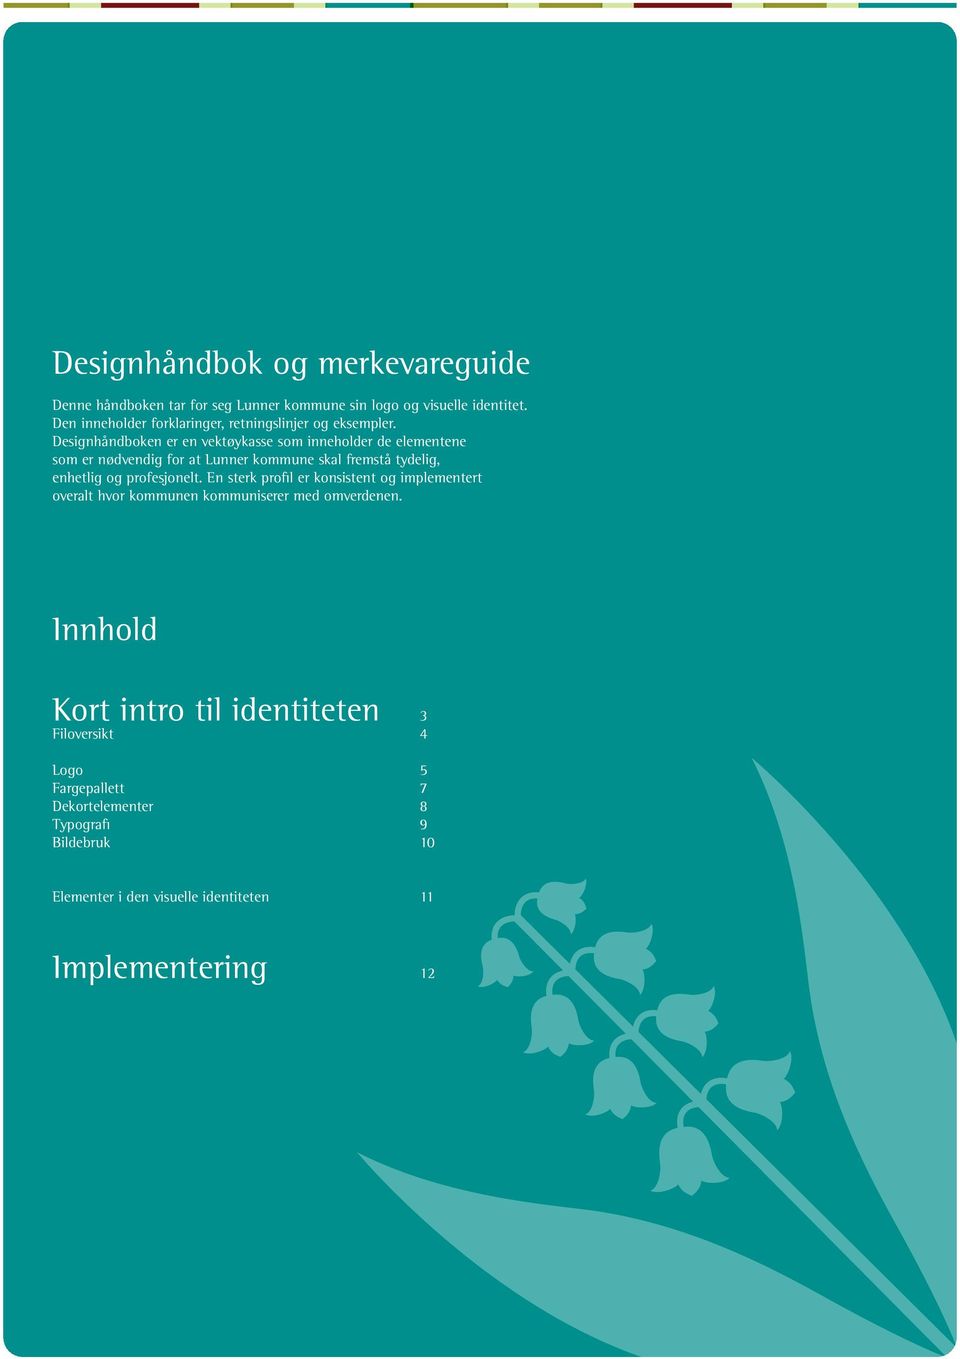 Designhåndboken er en vektøykasse som inneholder de elementene som er nødvendig for at Lunner kommune skal fremstå tydelig, enhetlig og